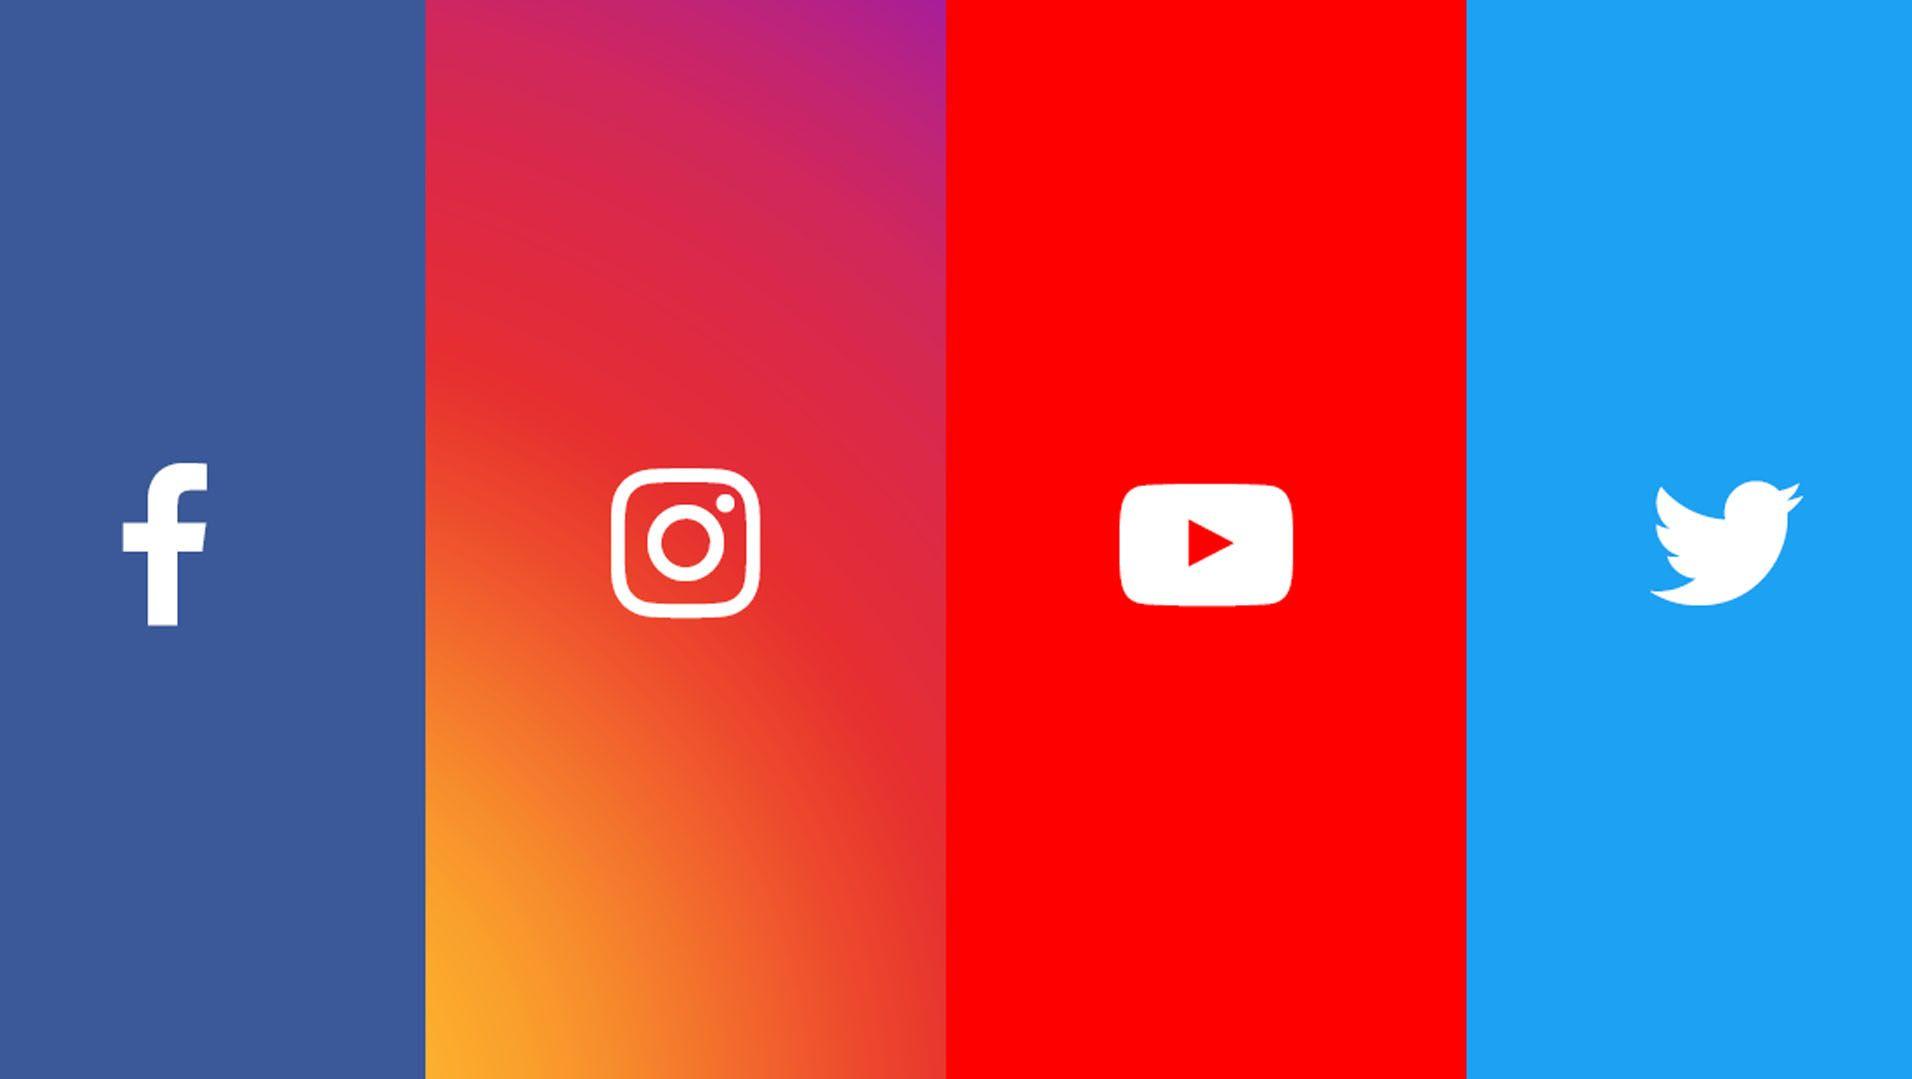 Facebook YouTube Instagram Logo - Arrows, lines and symbols for Instagram, Facebook, Youtube and ...